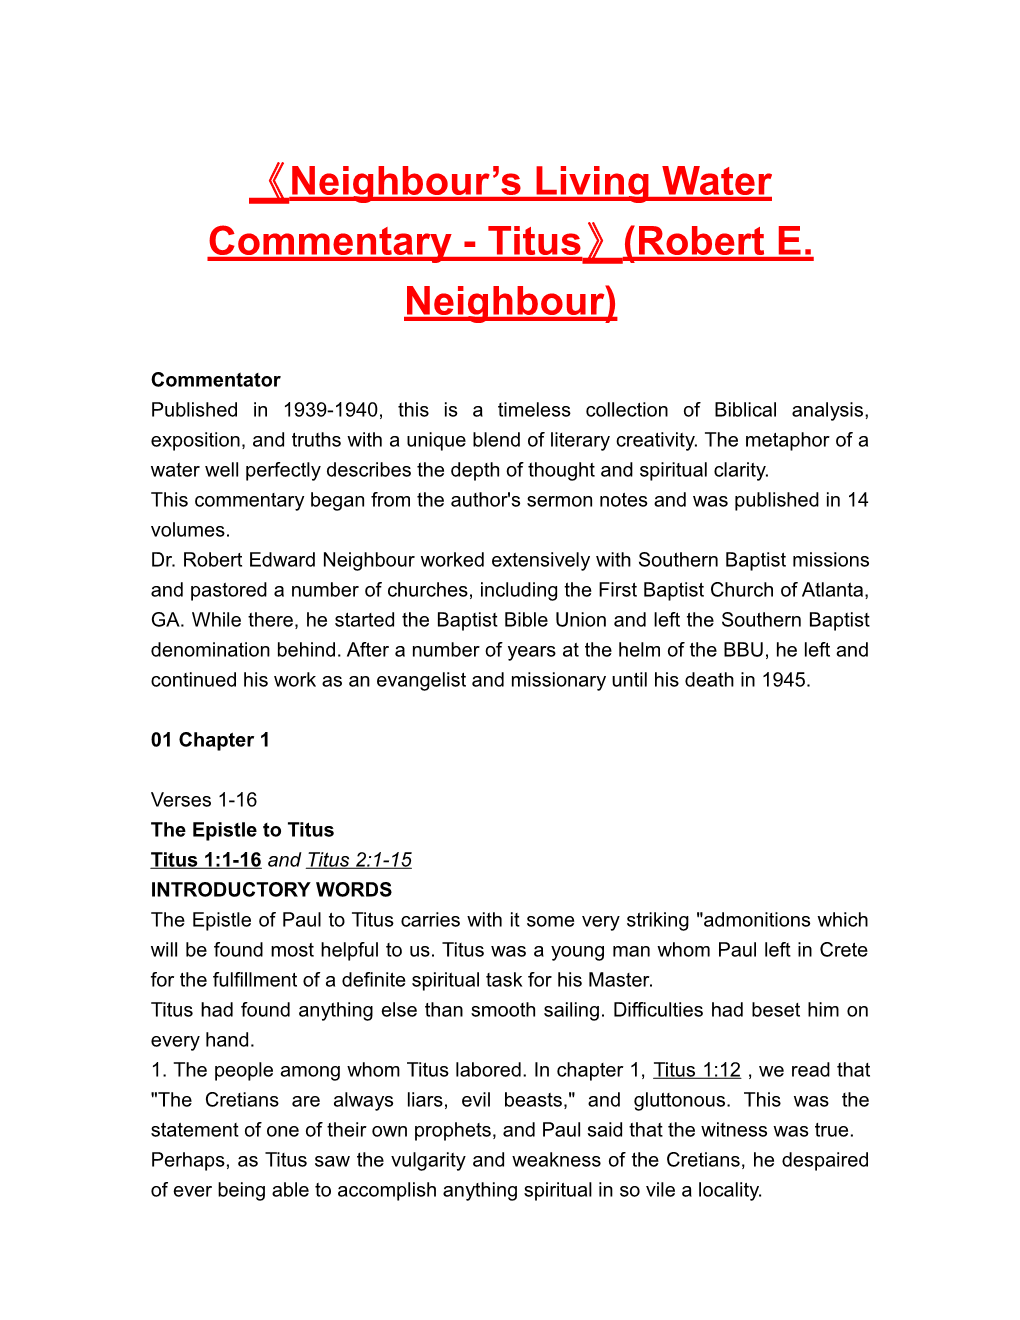 Neighbour S Living Water Commentary - Titus (Robert E. Neighbour)